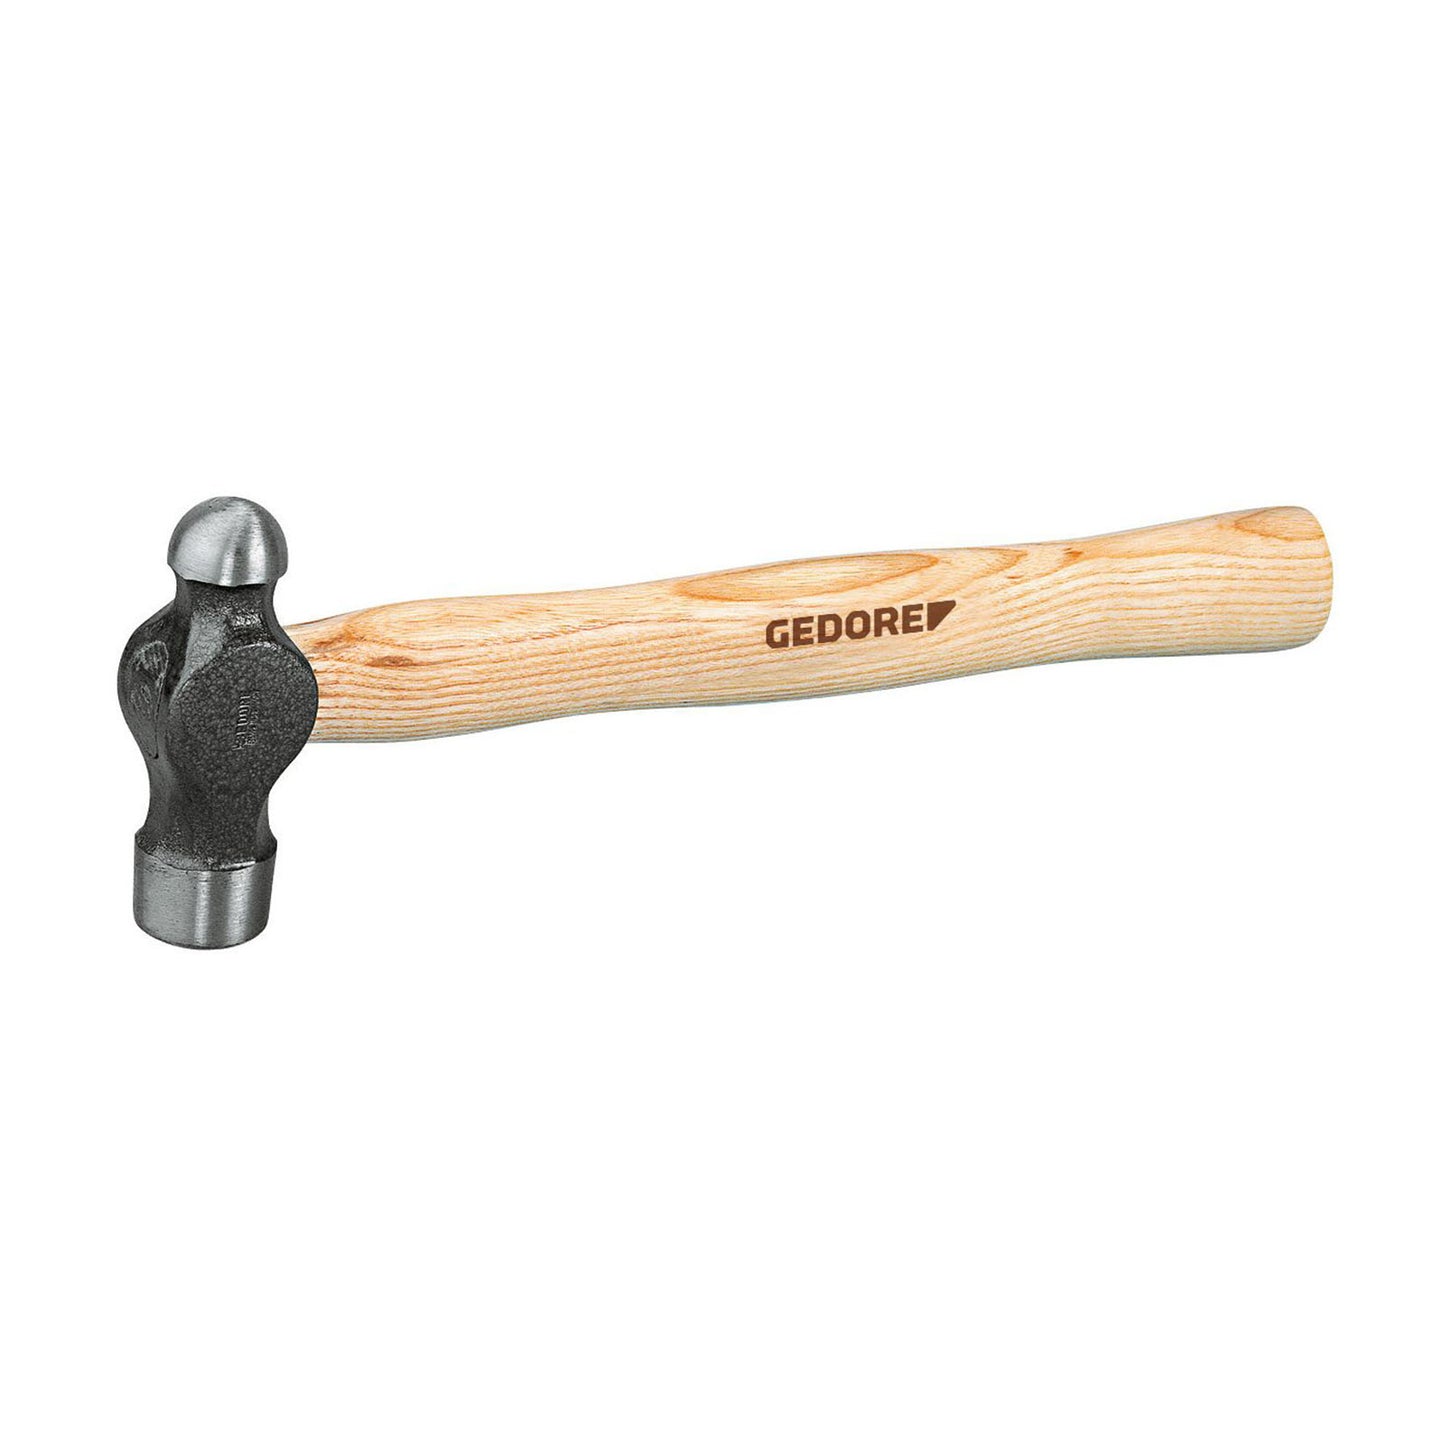 GEDORE 8601 1/2 - Mechanical hammer 1/2LBS (6764110)